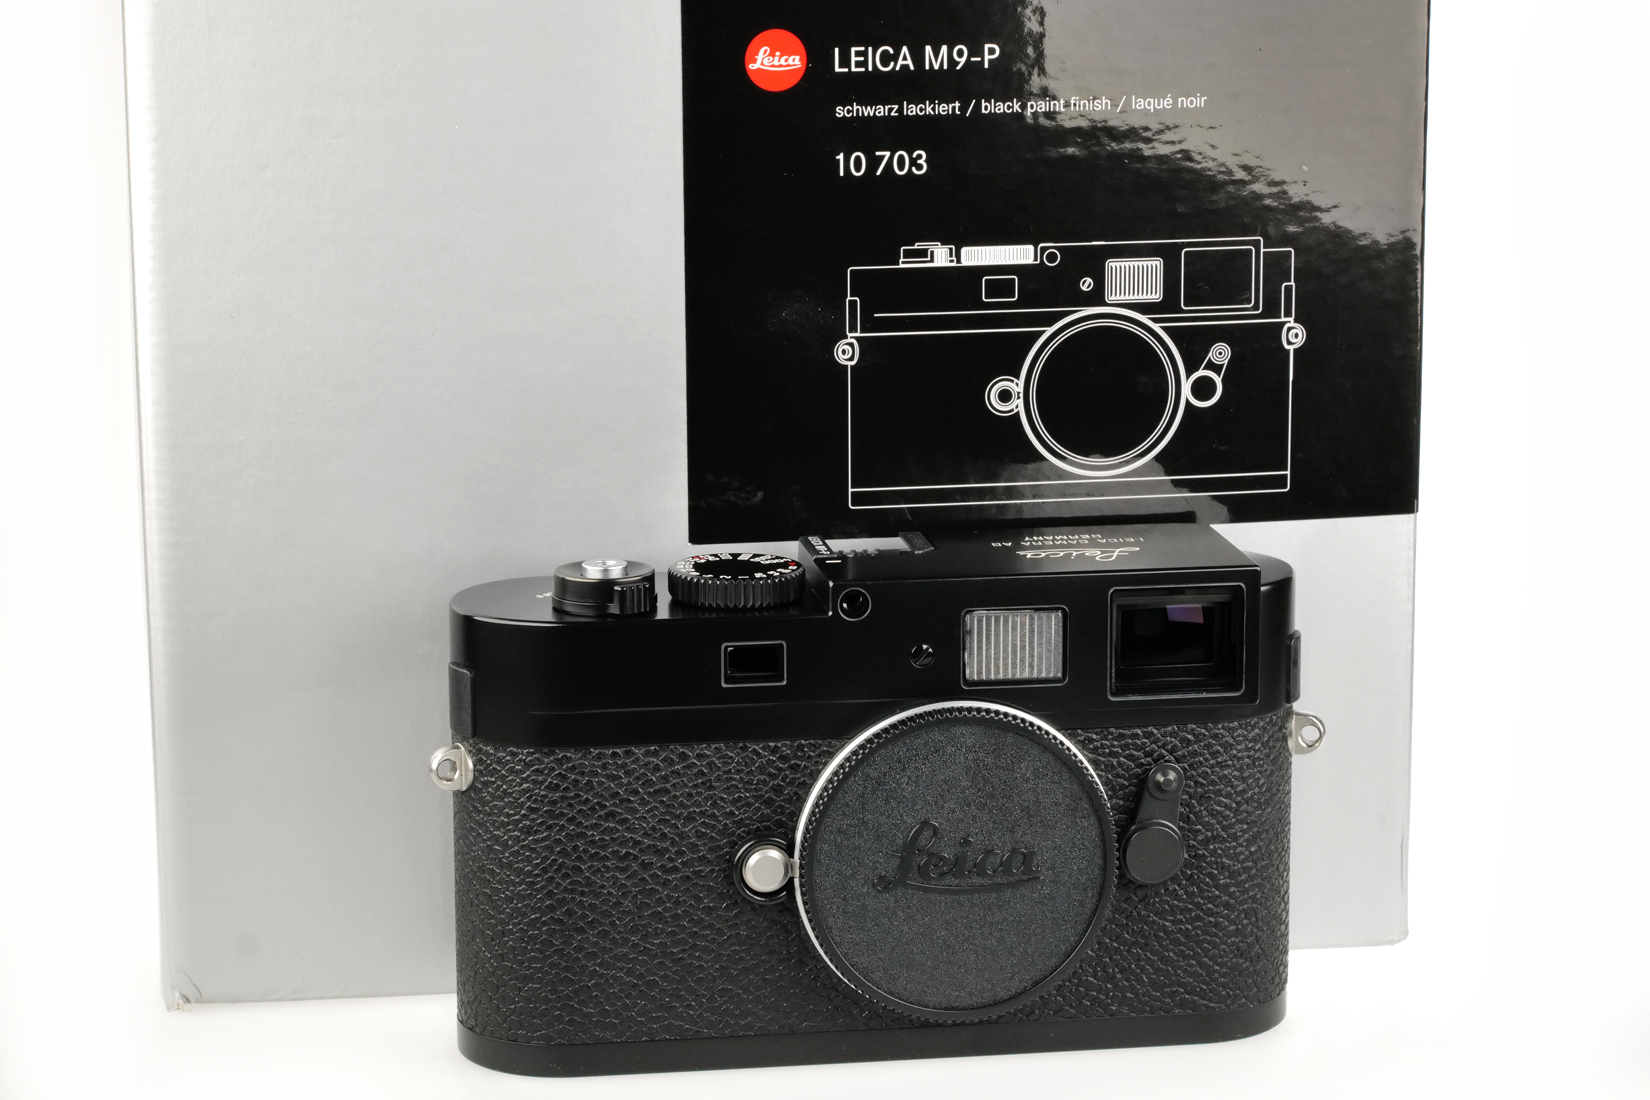 Leica M9-P, black, 10703